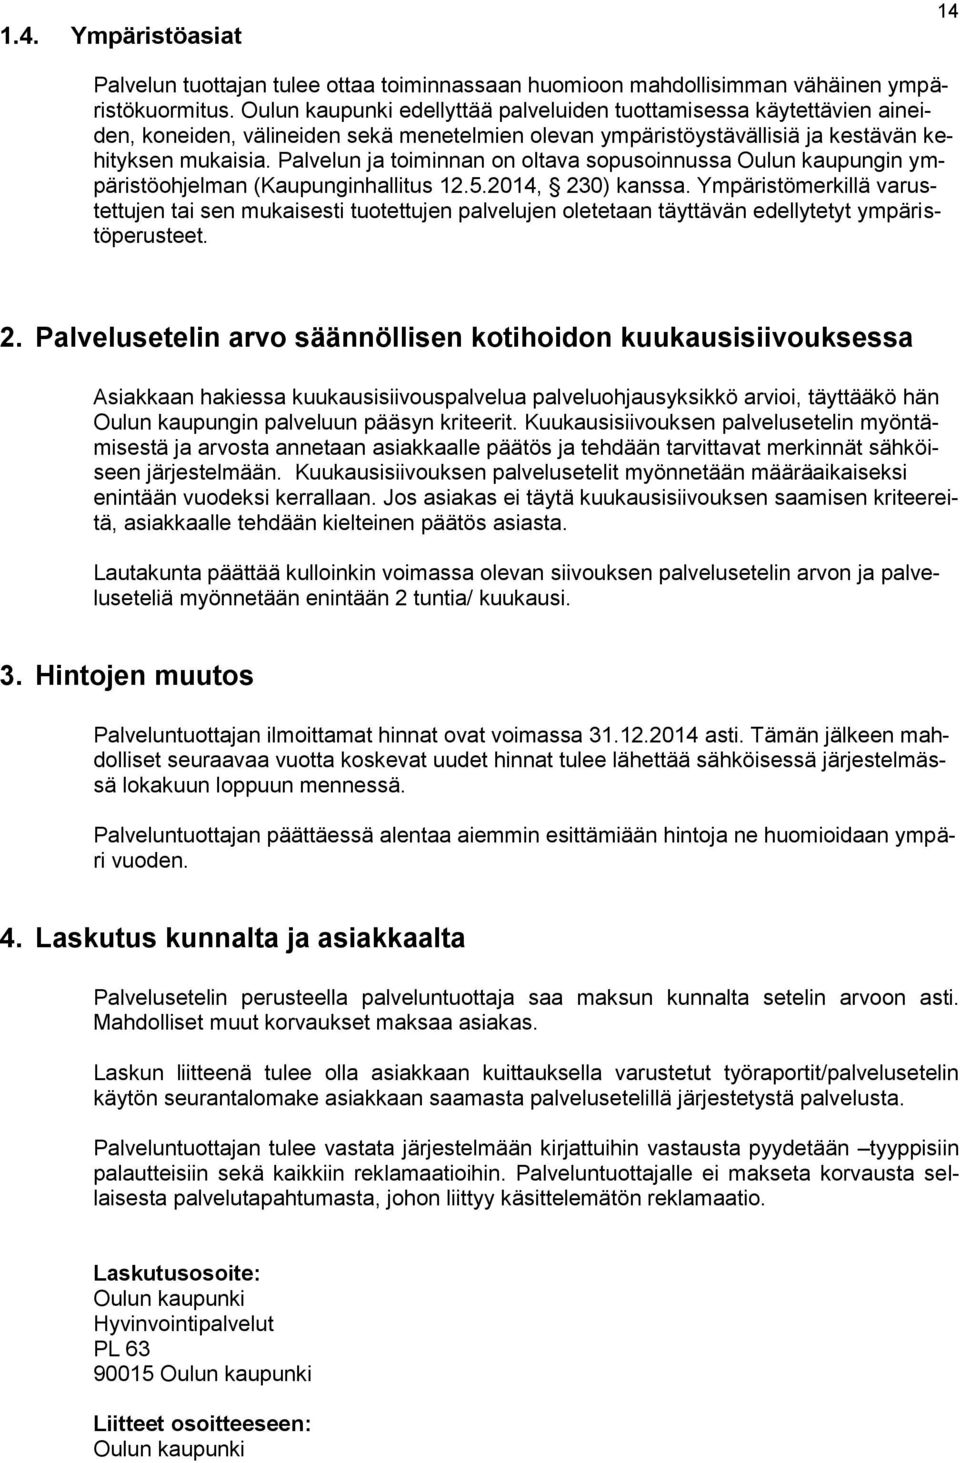 Palvelun ja toiminnan on oltava sopusoinnussa Oulun kaupungin ympäristöohjelman (Kaupunginhallitus 12.5.2014, 230) kanssa.